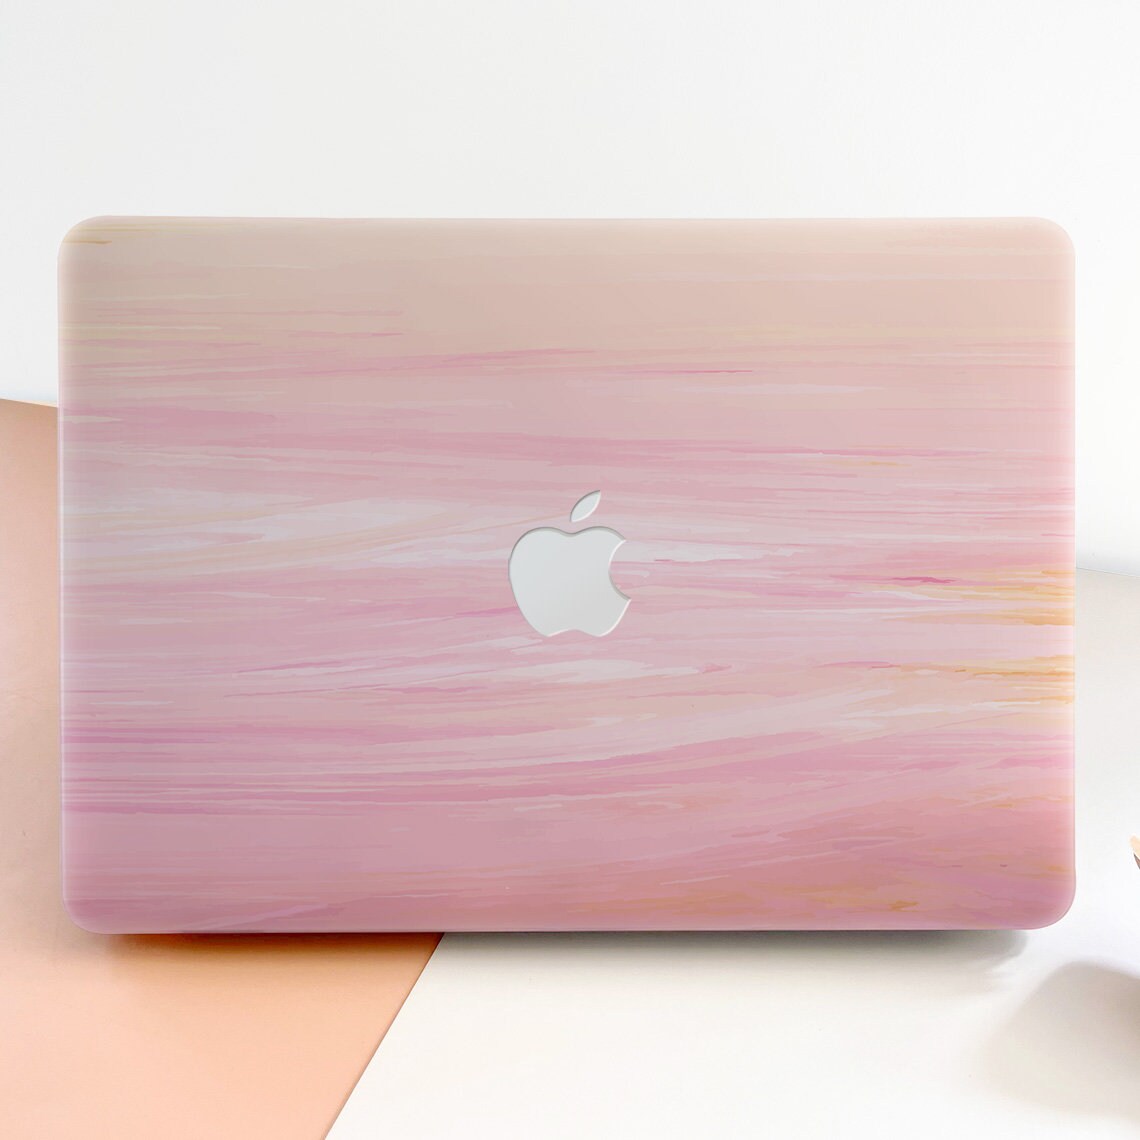 Apple Old Macbook Pro 13 with CD-ROM - Artistic Fantasy Meadow Field Flower Pink Moon Sky Model: A1278 KoolMac Full Body Hard Case 